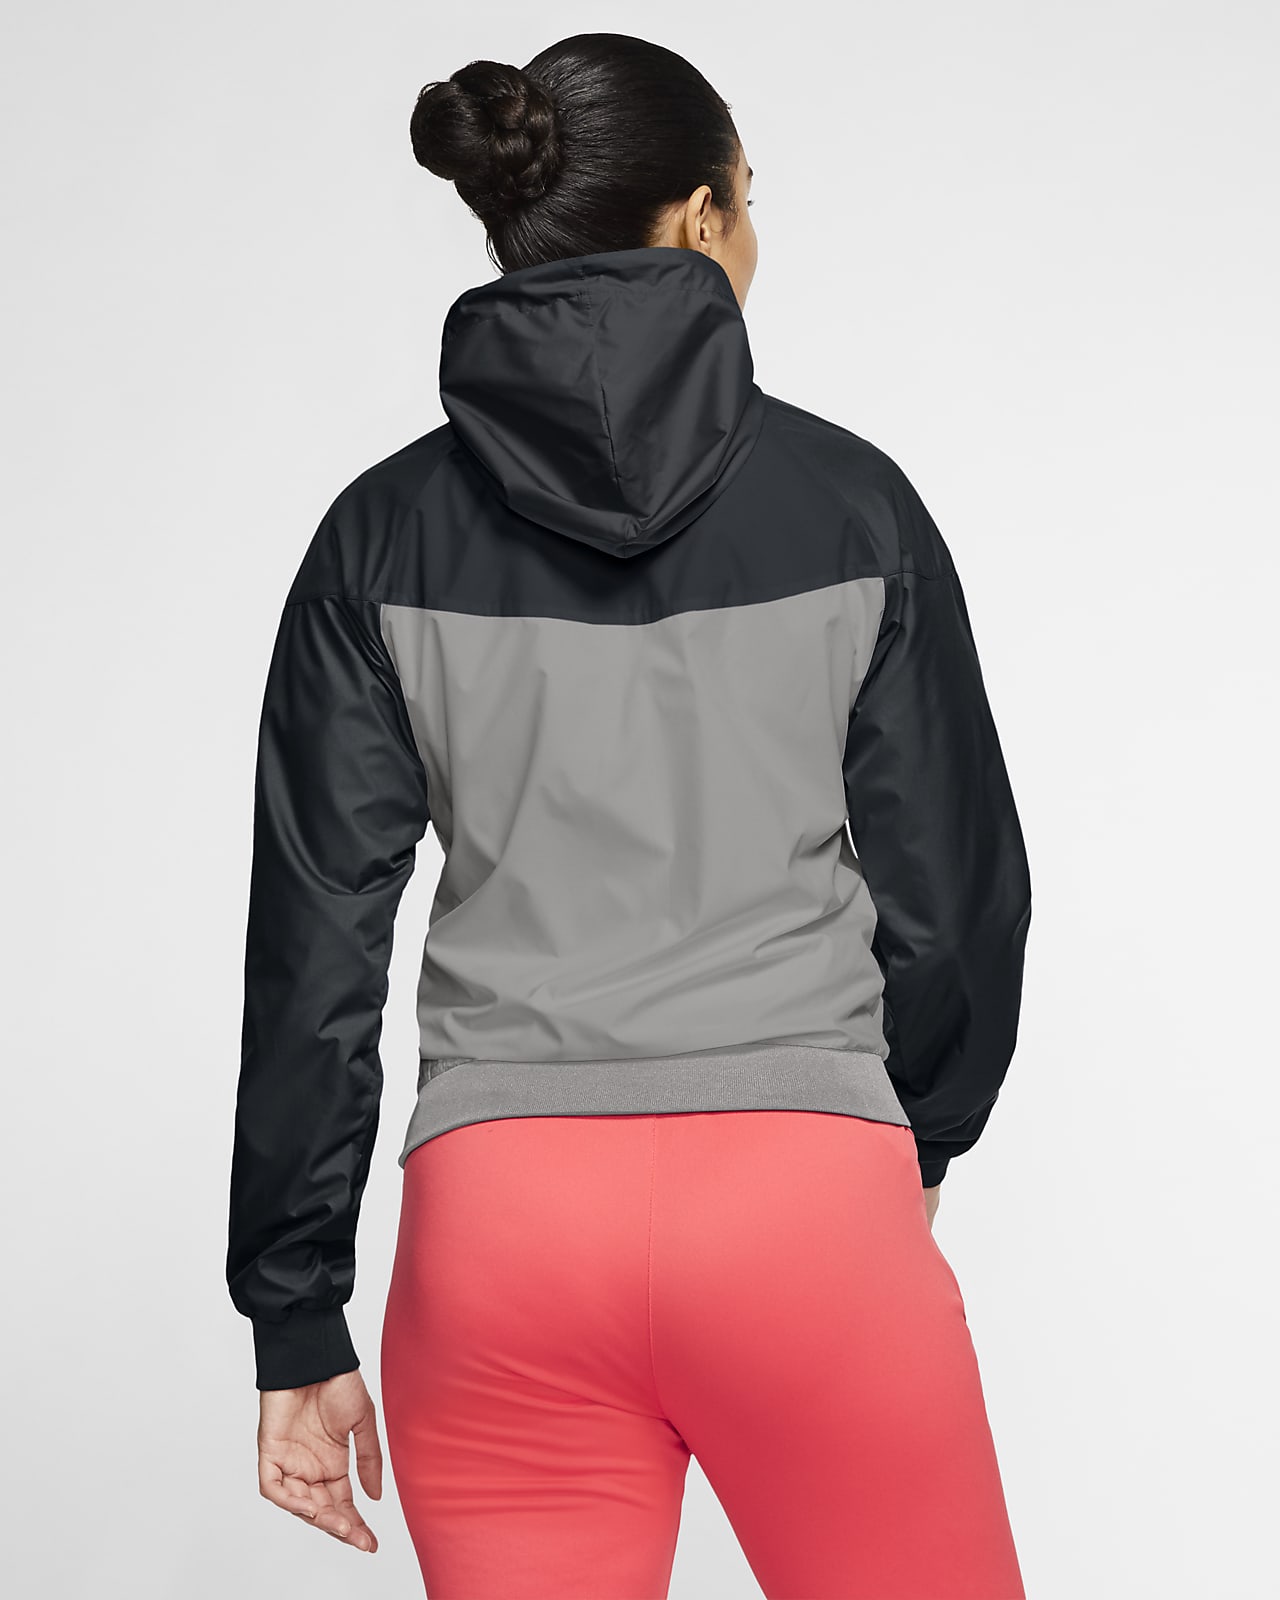 Nike Sportswear Windrunner Floral Jacket - Women's Small - 922188 471